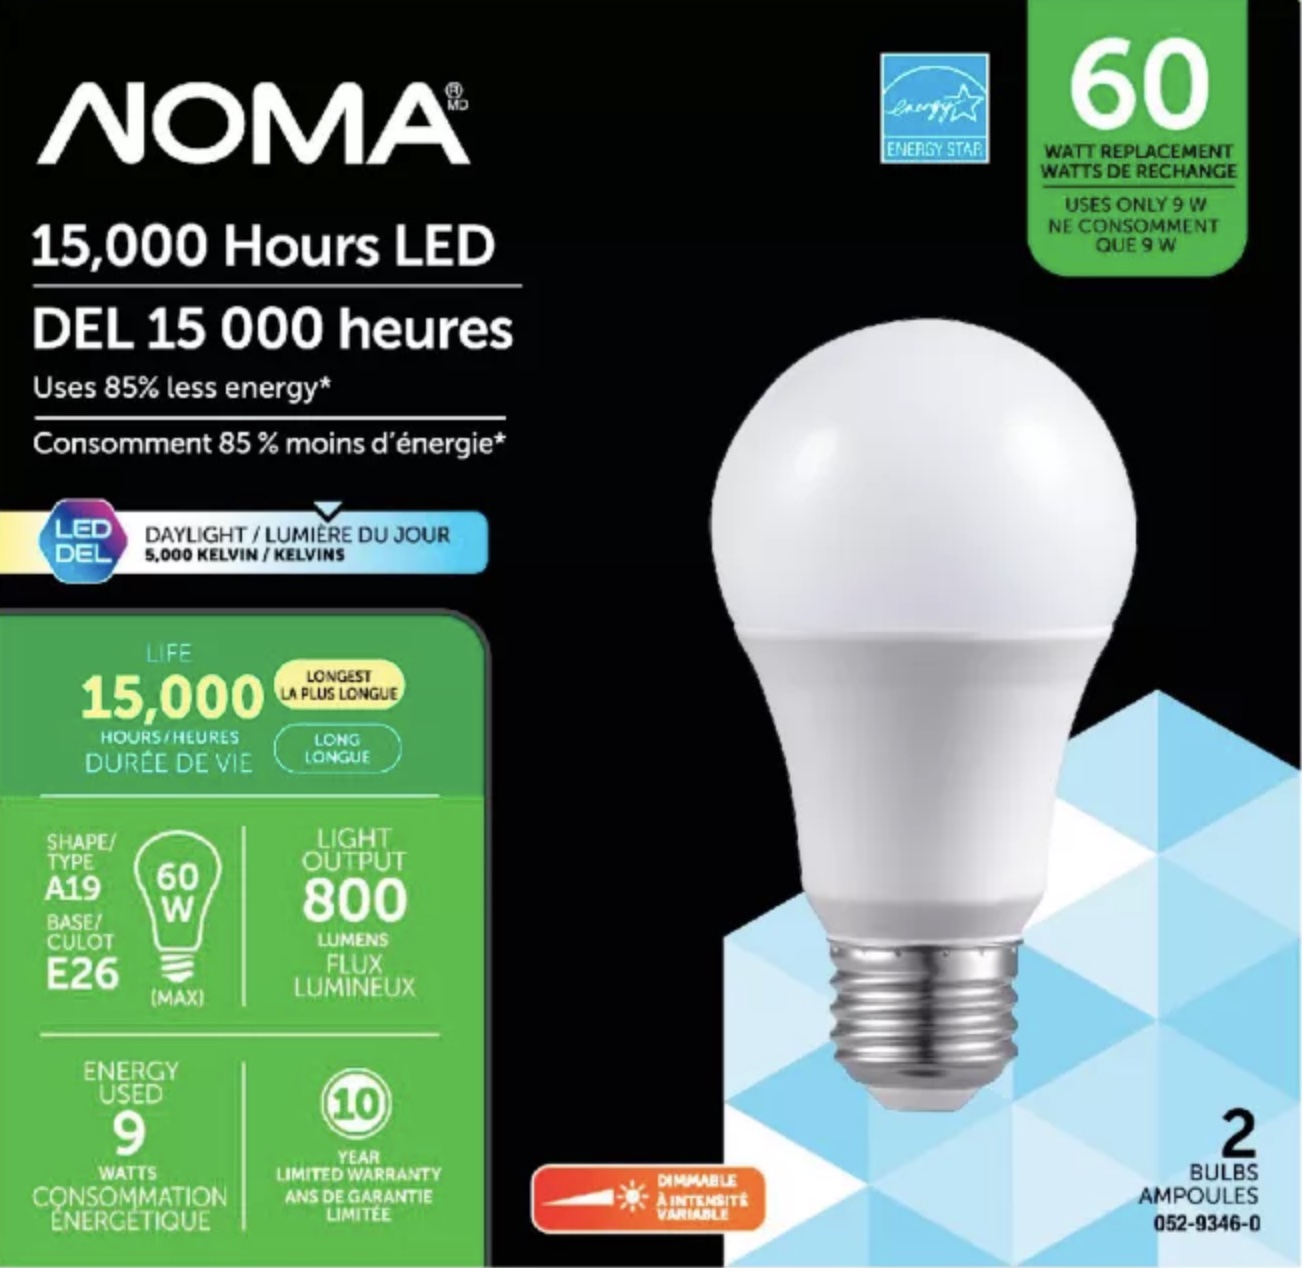 NOMA LED lightbulbs.